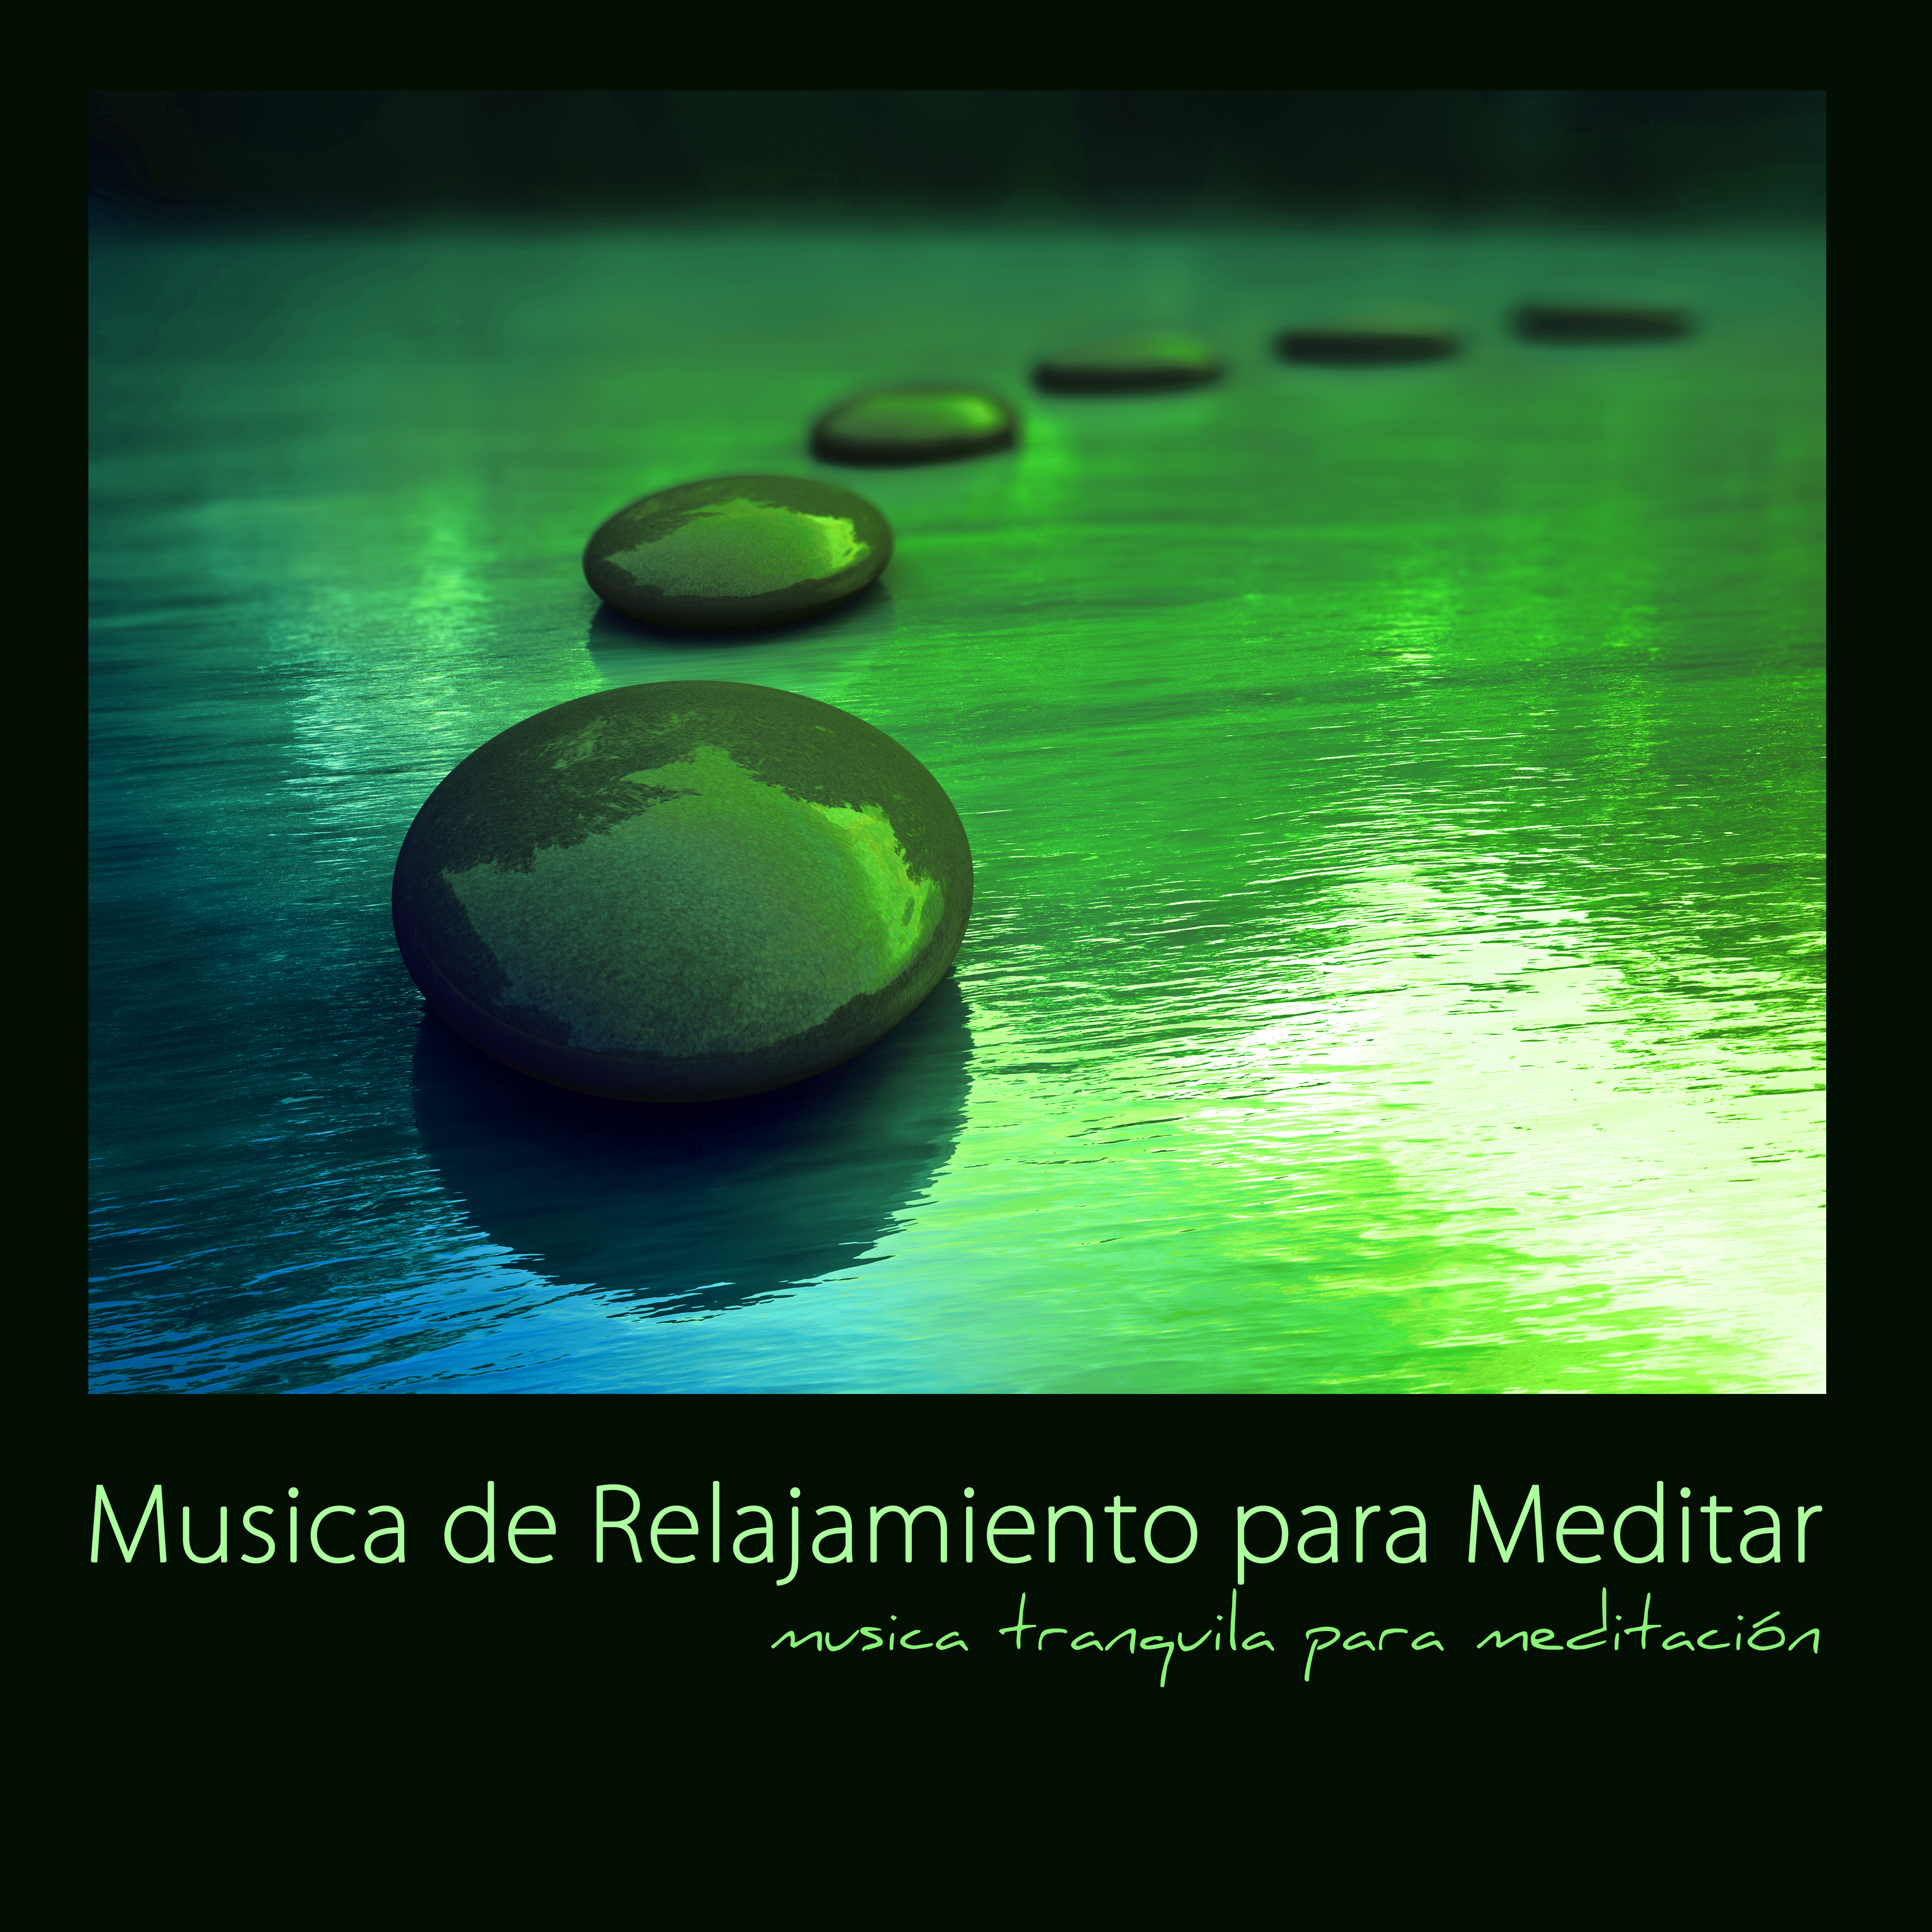 Musica de Relajamiento para Meditar  Musica Tranquila para Meditacio n, Canciones Relajantes con Sonidos de la Naturaleza